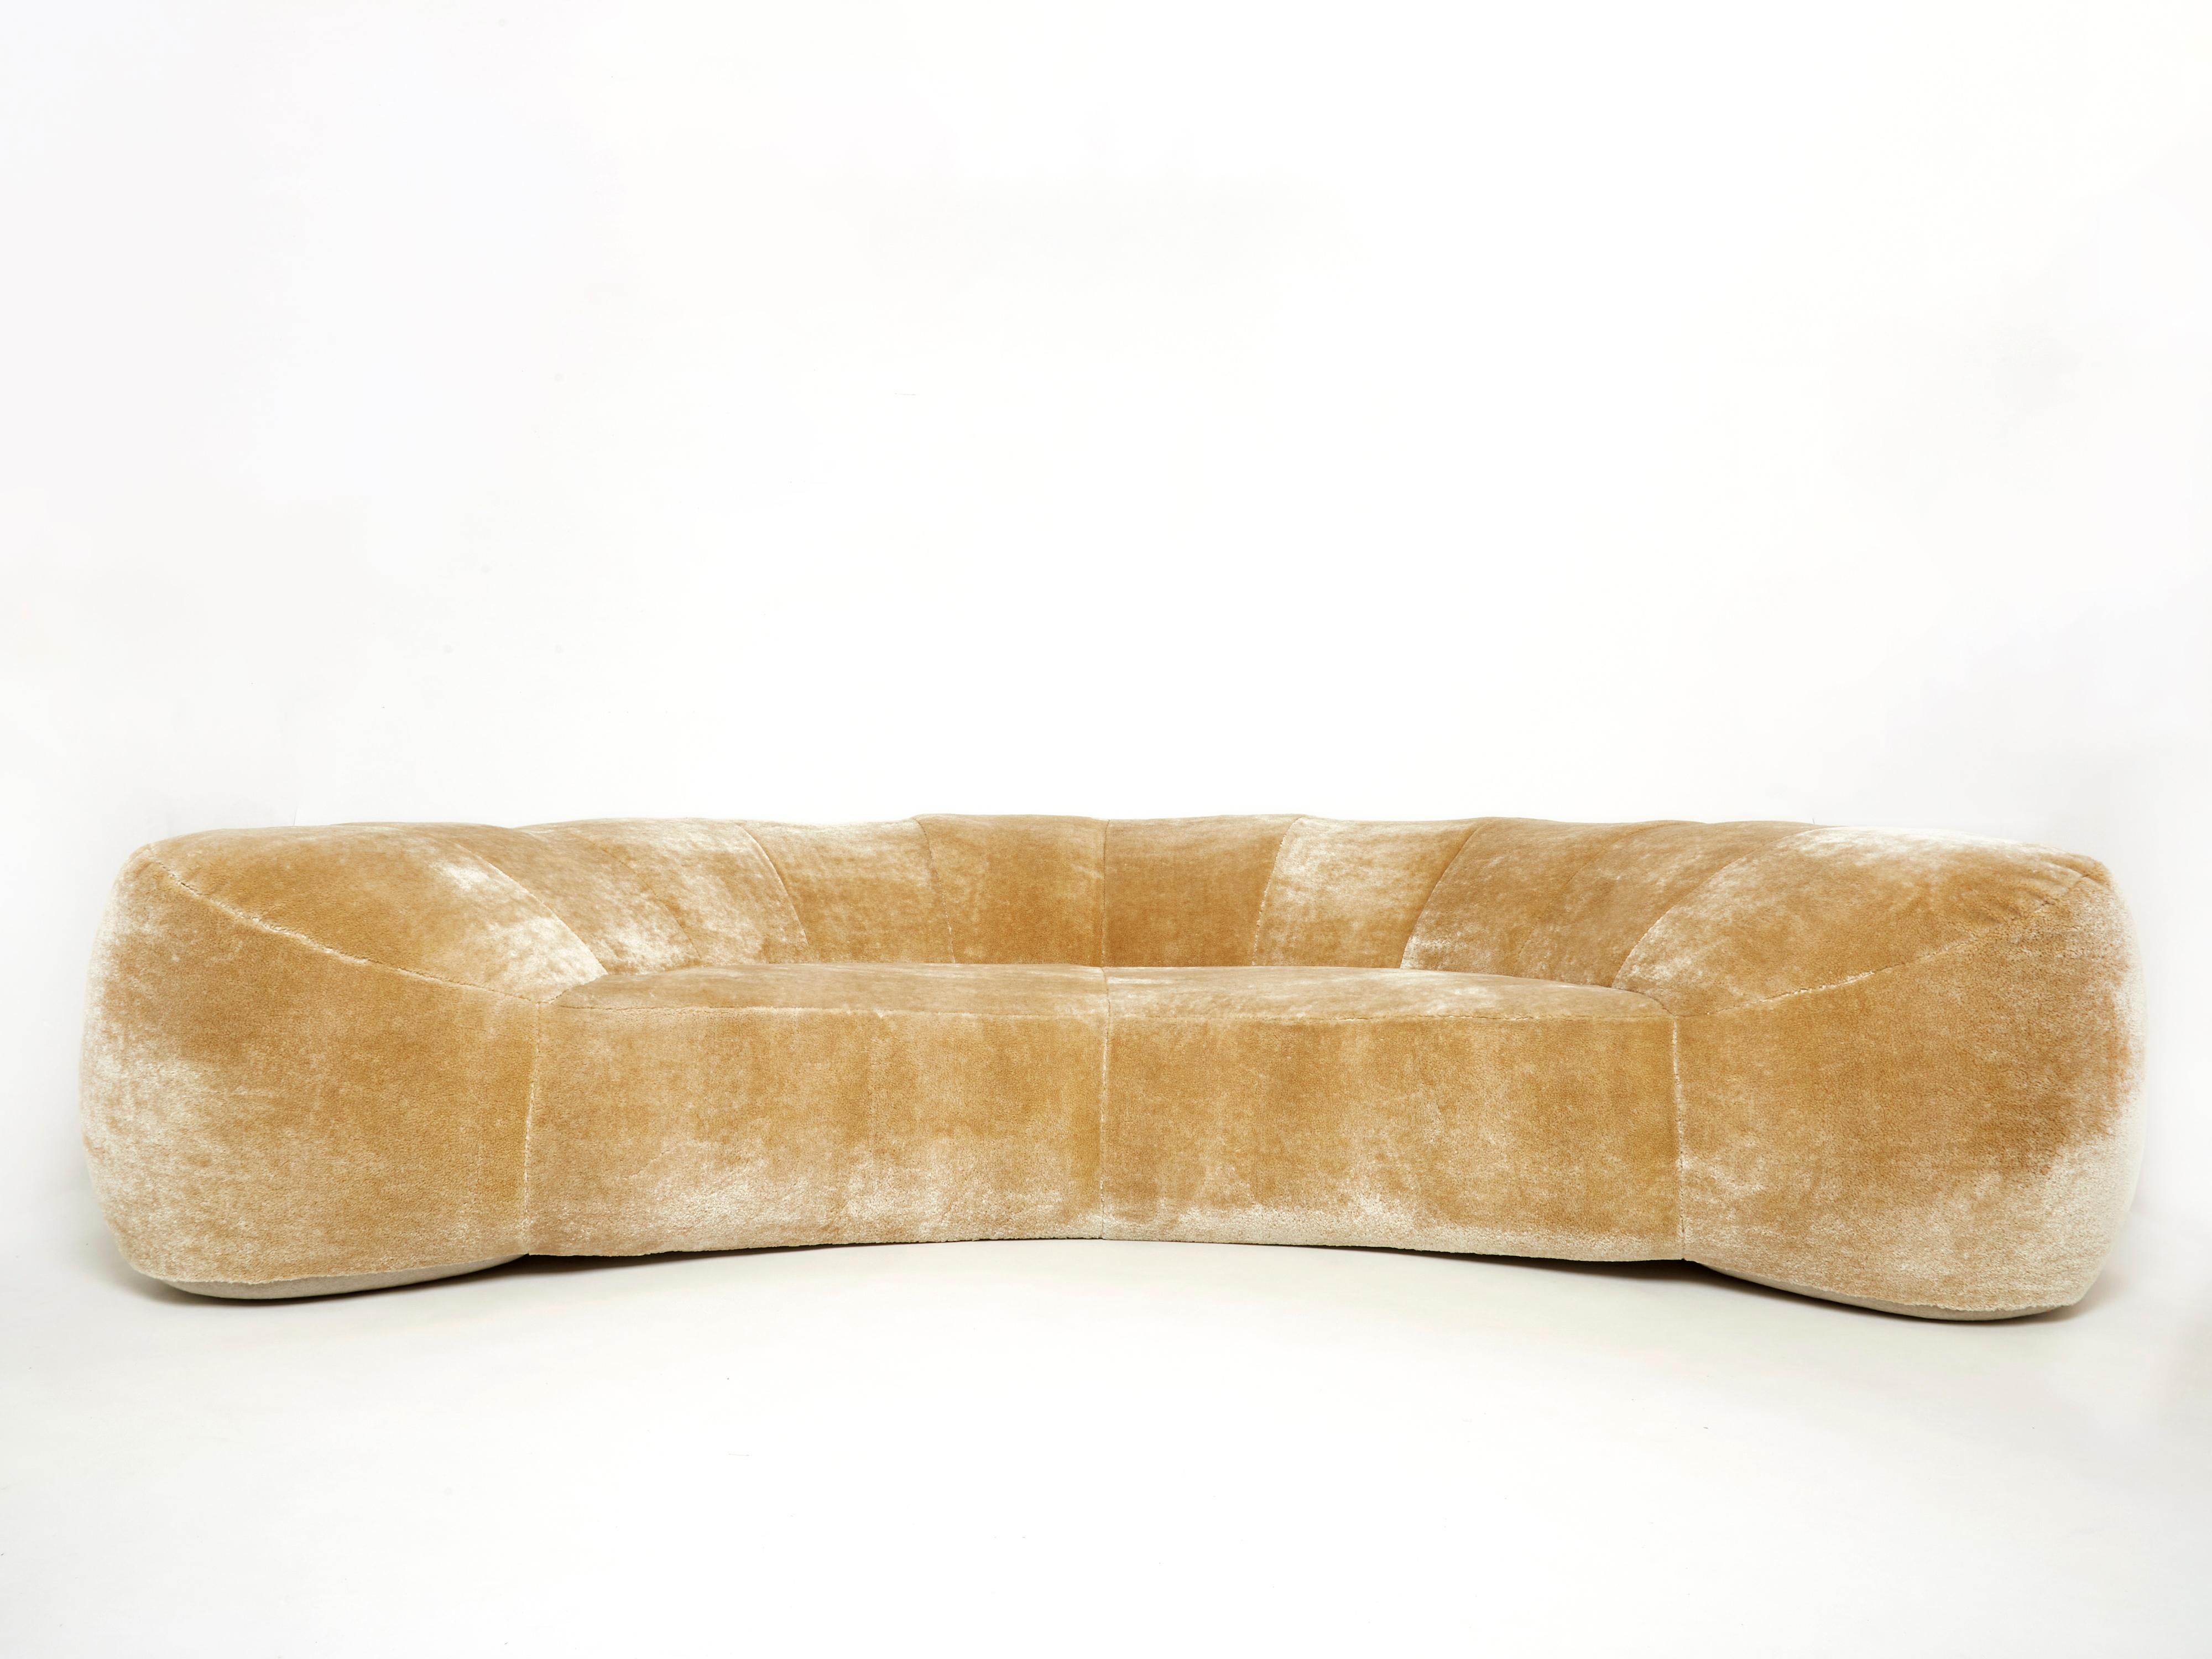 Seltenes Croissant-Sofa von Raphaël Raffel für Maison Honoré Paris aus der Mitte der 1970er Jahre. Das Sofa wurde vollständig restauriert und mit einem wunderschönen, hellen Teddykaramell-Mohair-Samtstoff des italienischen Herausgebers Dedar - A